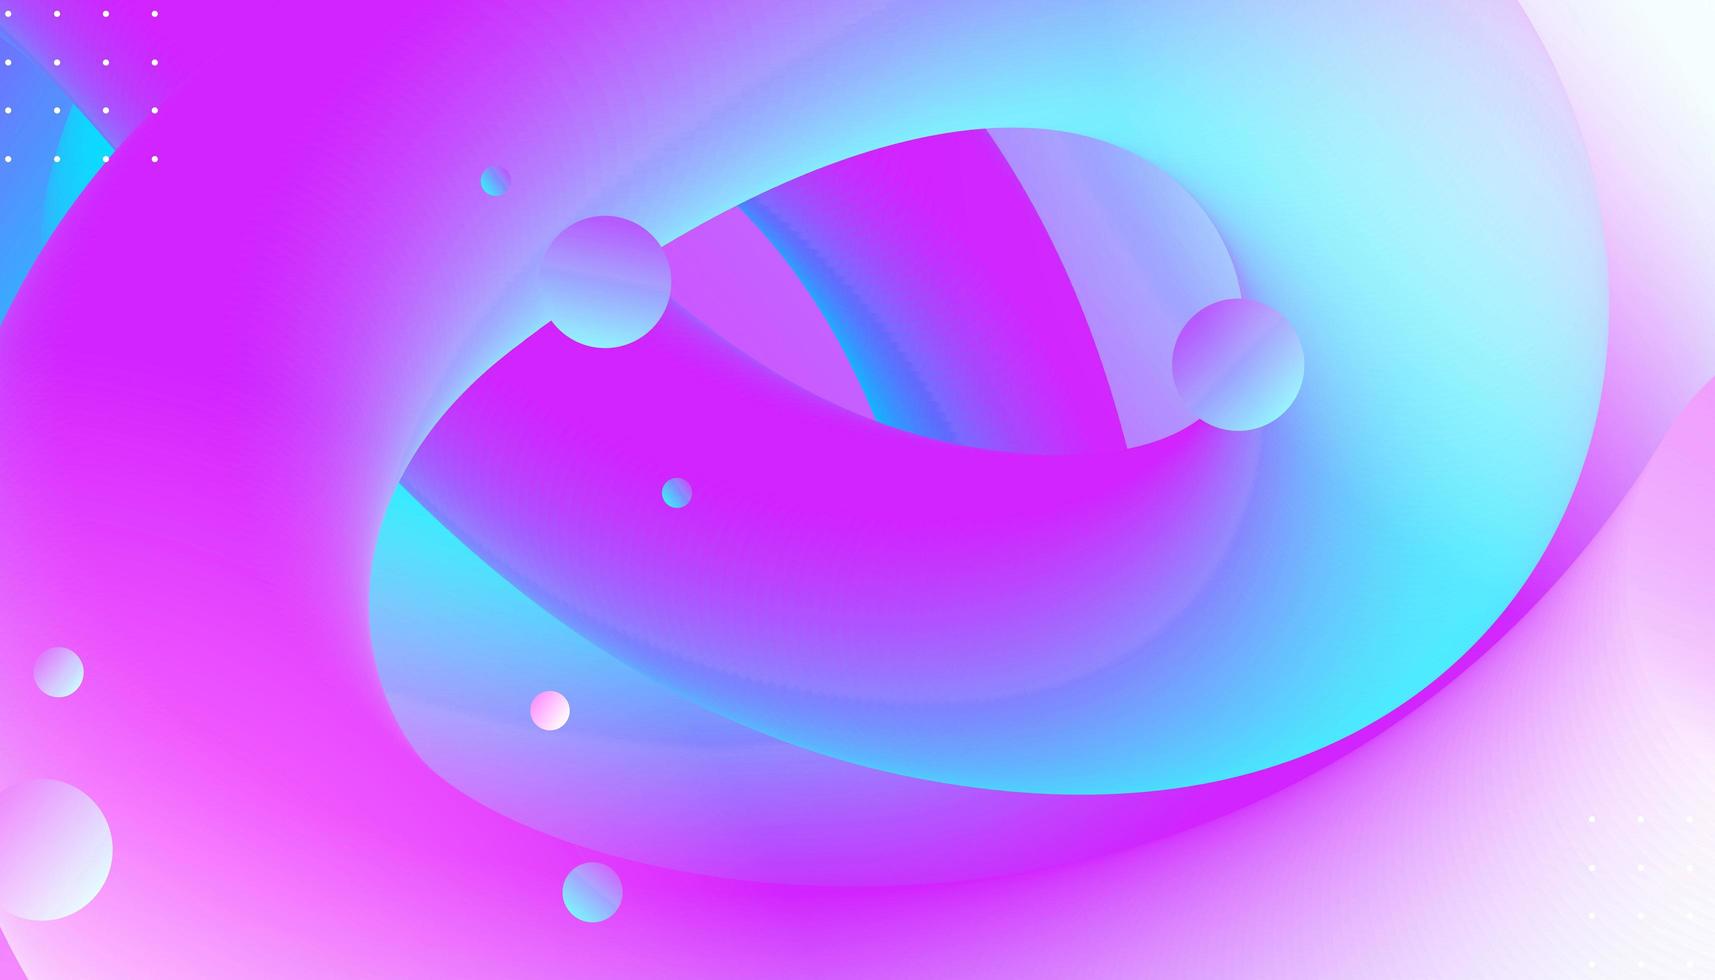 cielo azul claro y púrpura claro abstracto realista líquido moderno colorido tentáculo líneas flujo de onda en colorido. foto